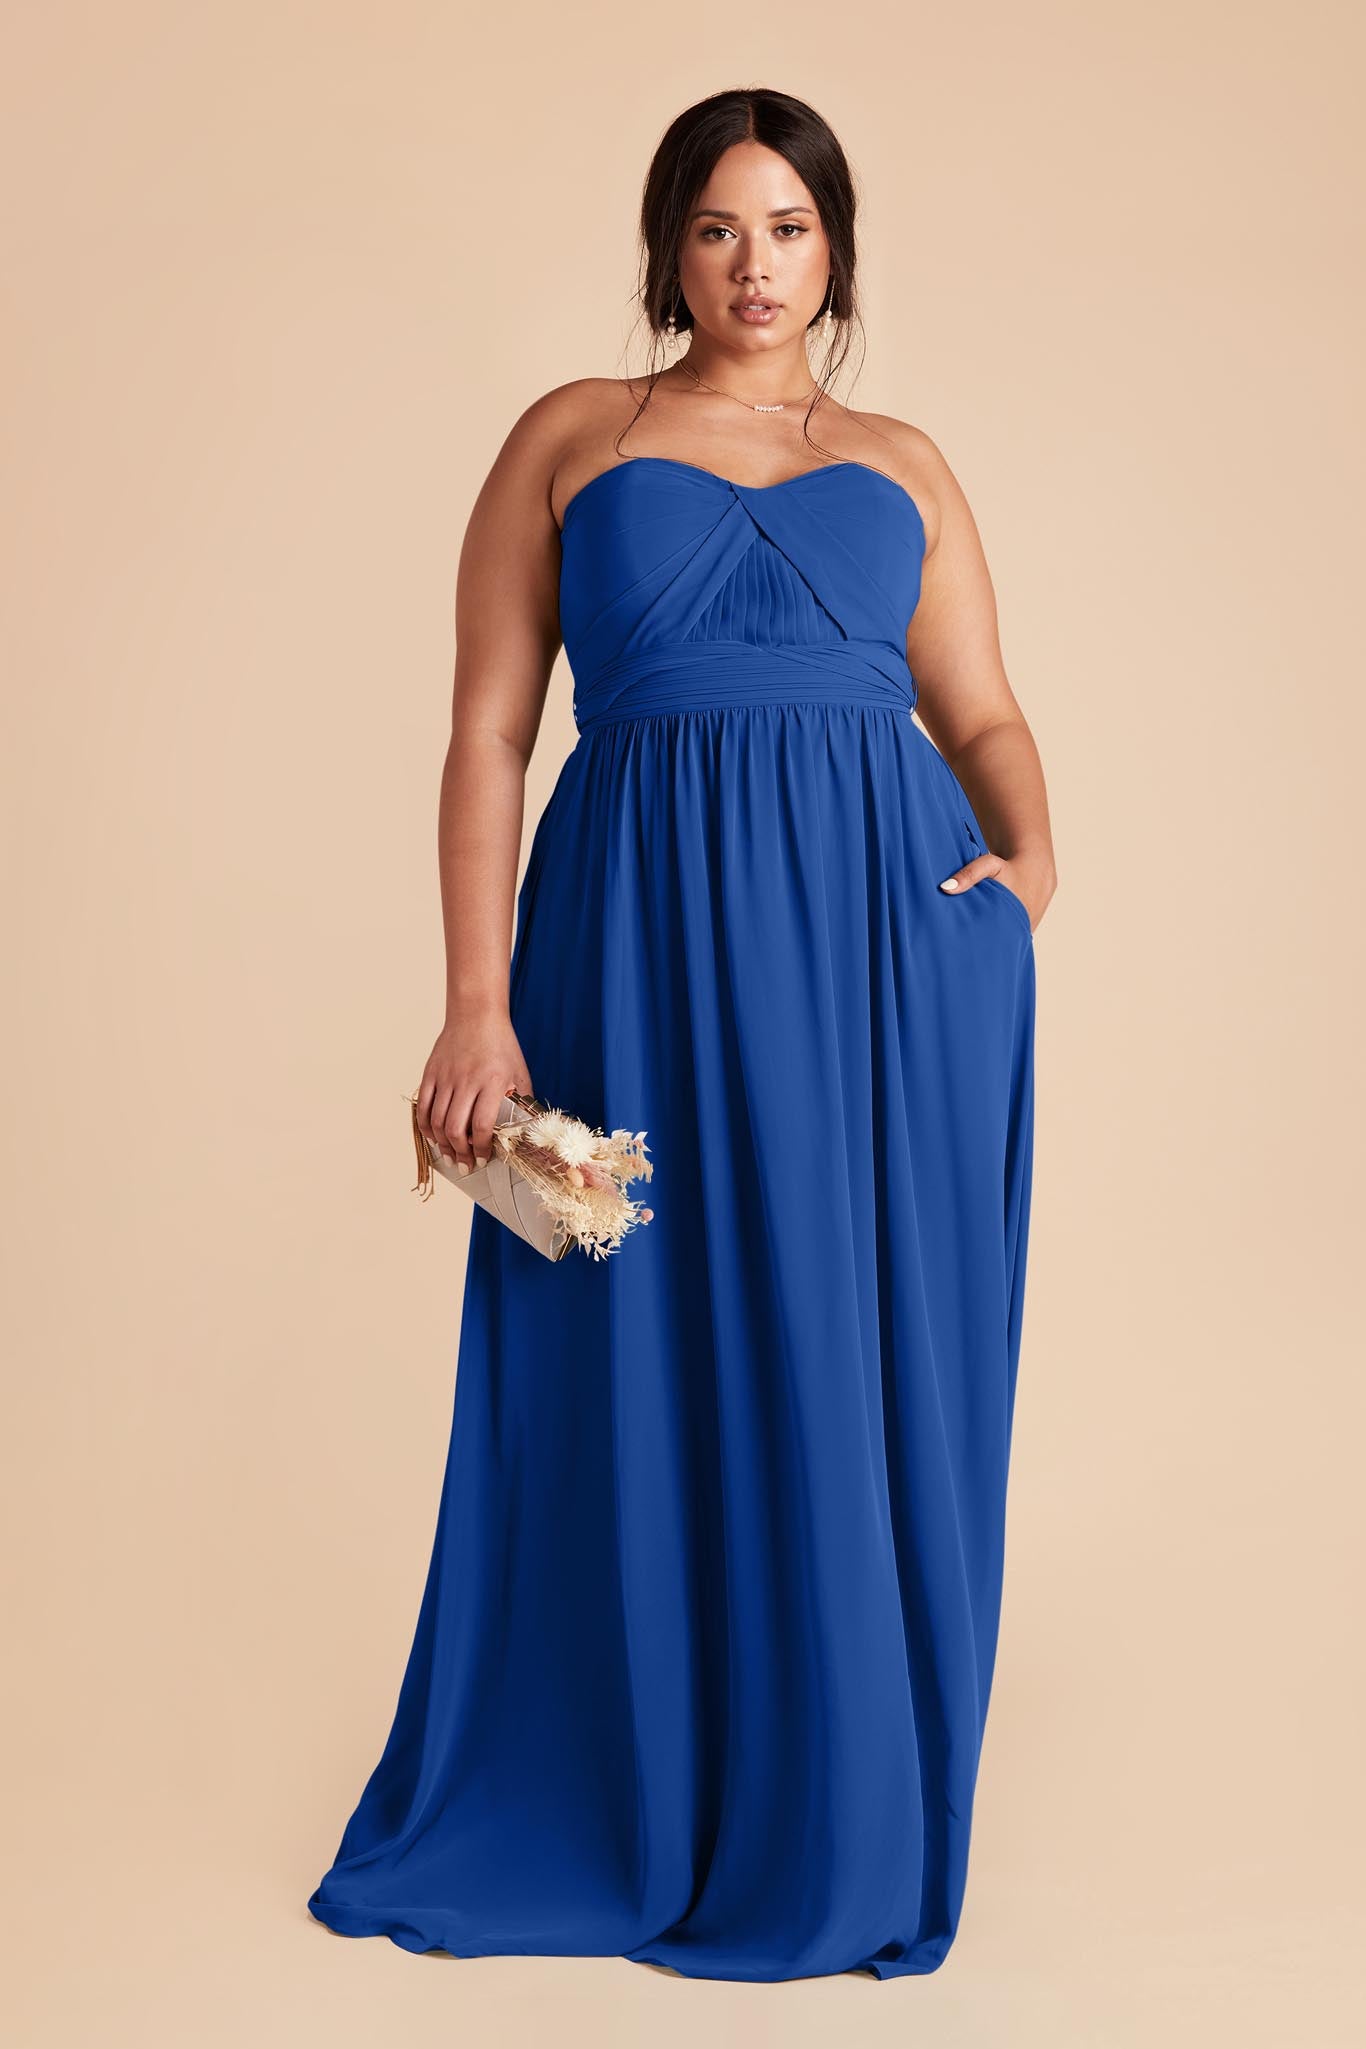 Cobalt Blue Grace Convertible Dress by Birdy Grey